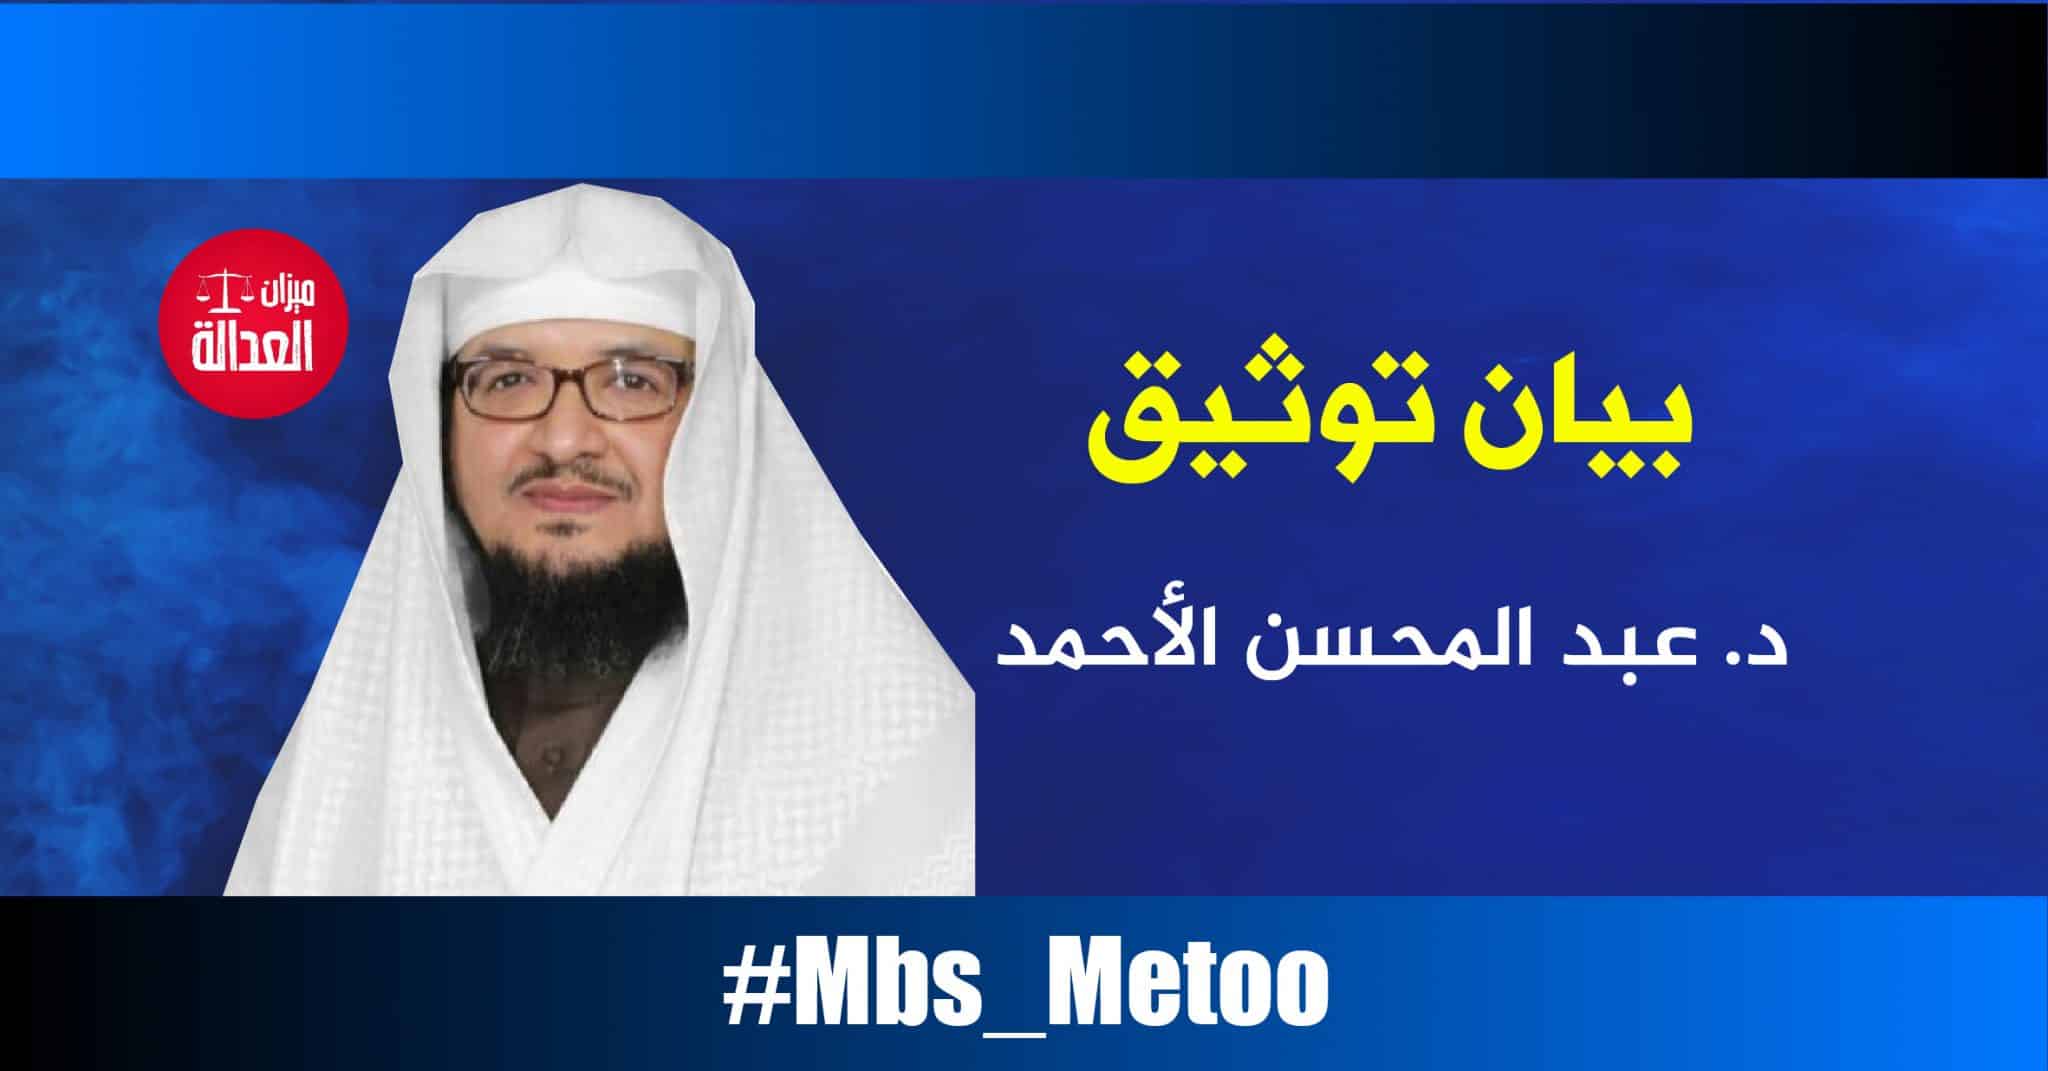 د عبد المحسن بن محمد الأحمد بيان توثيق Mbs Metoo